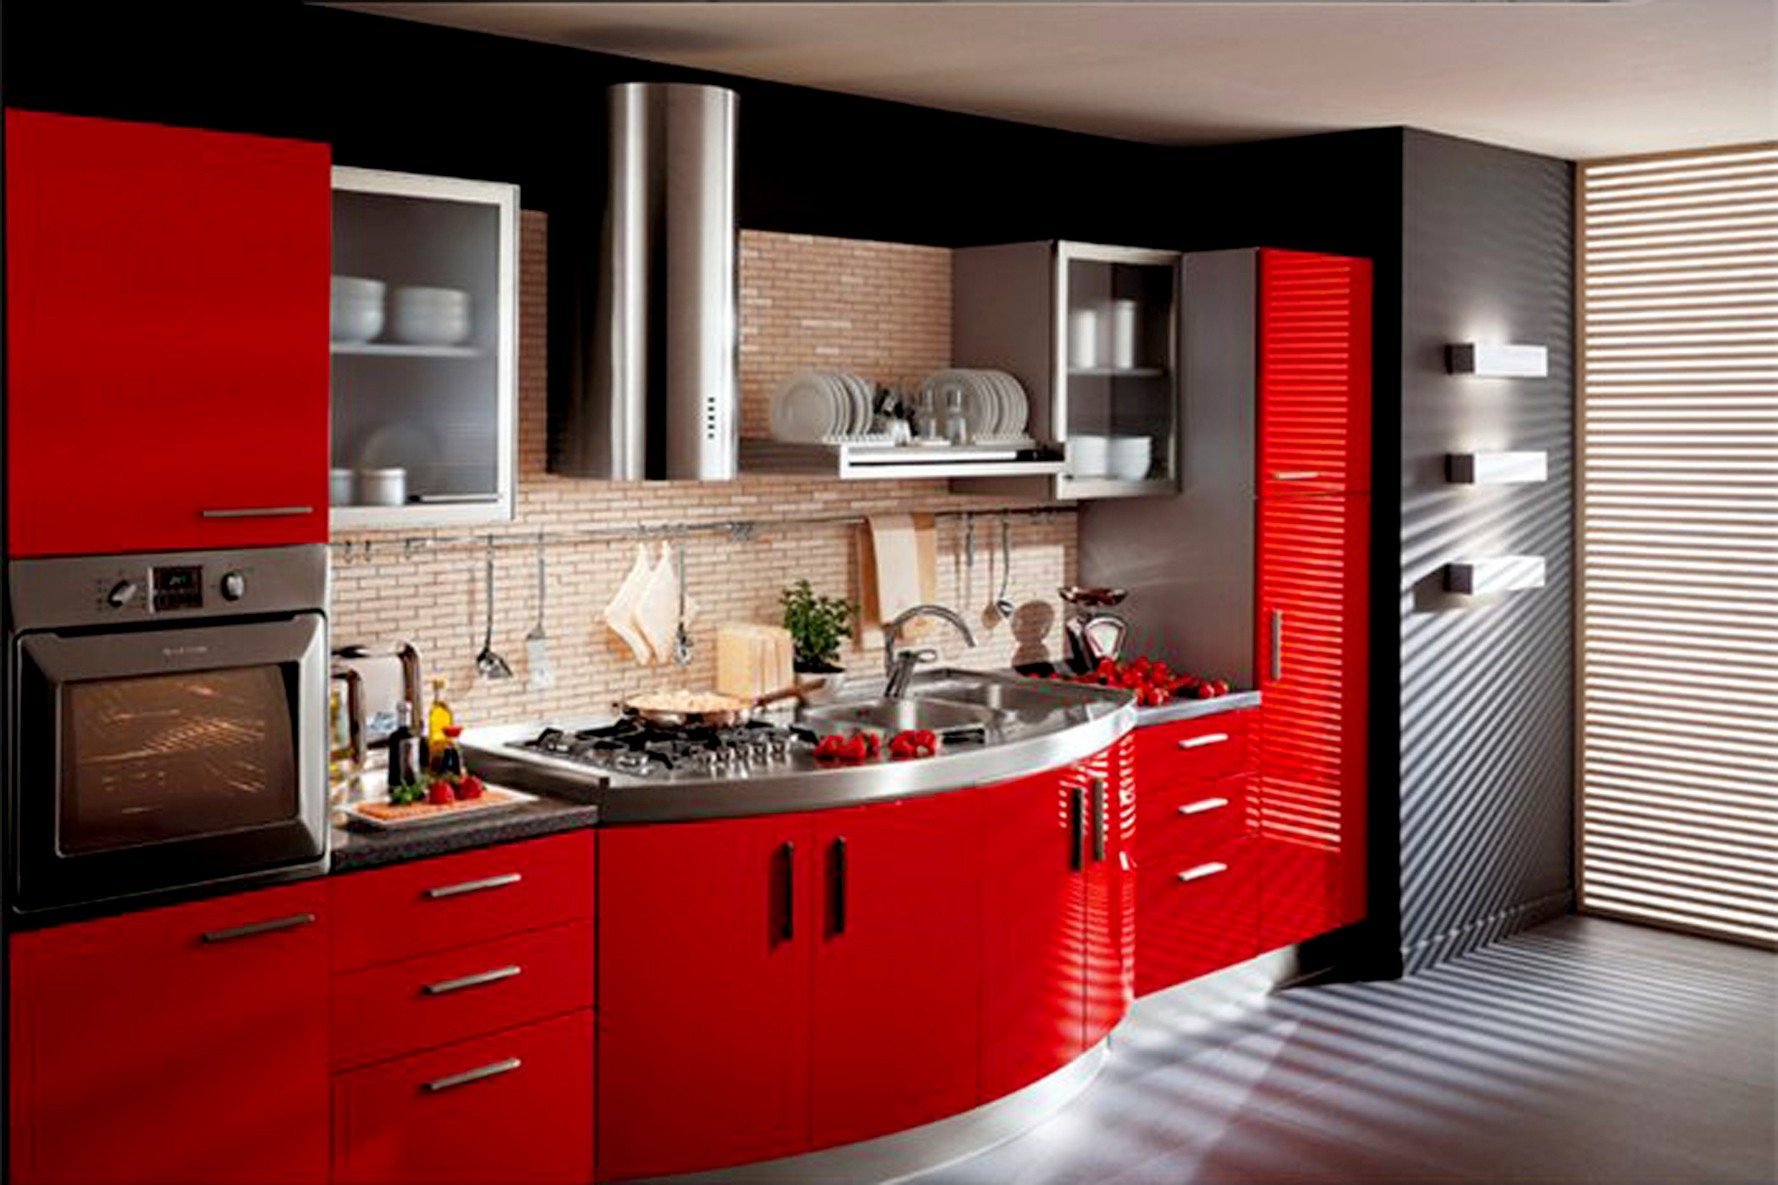 Кухни новые красивые. Кухня в Красном цвете. Красивый кухонный гарнитур. Кухонный гарнитур красного цвета. Необычный кухонный гарнитур.